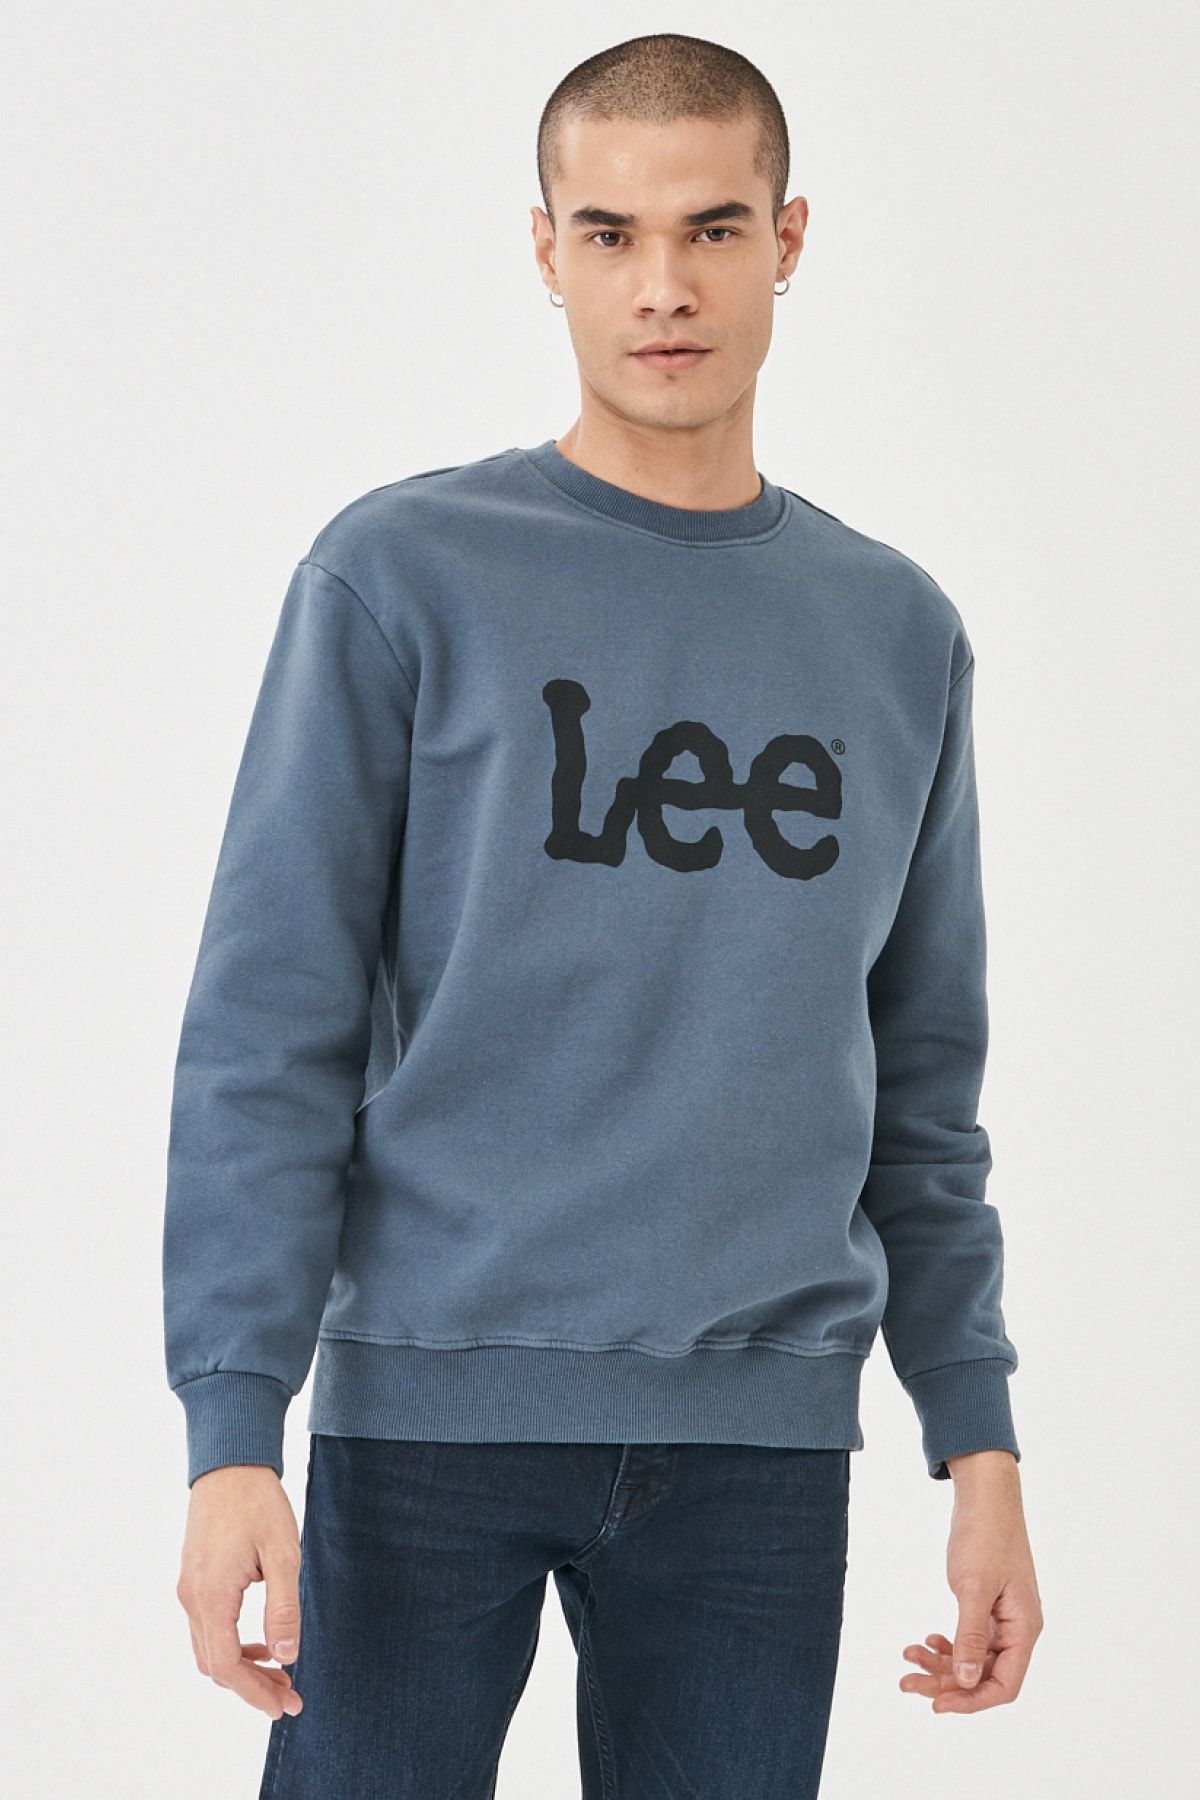 Lee Sweatshirt - White - Regular fit - Trendyol